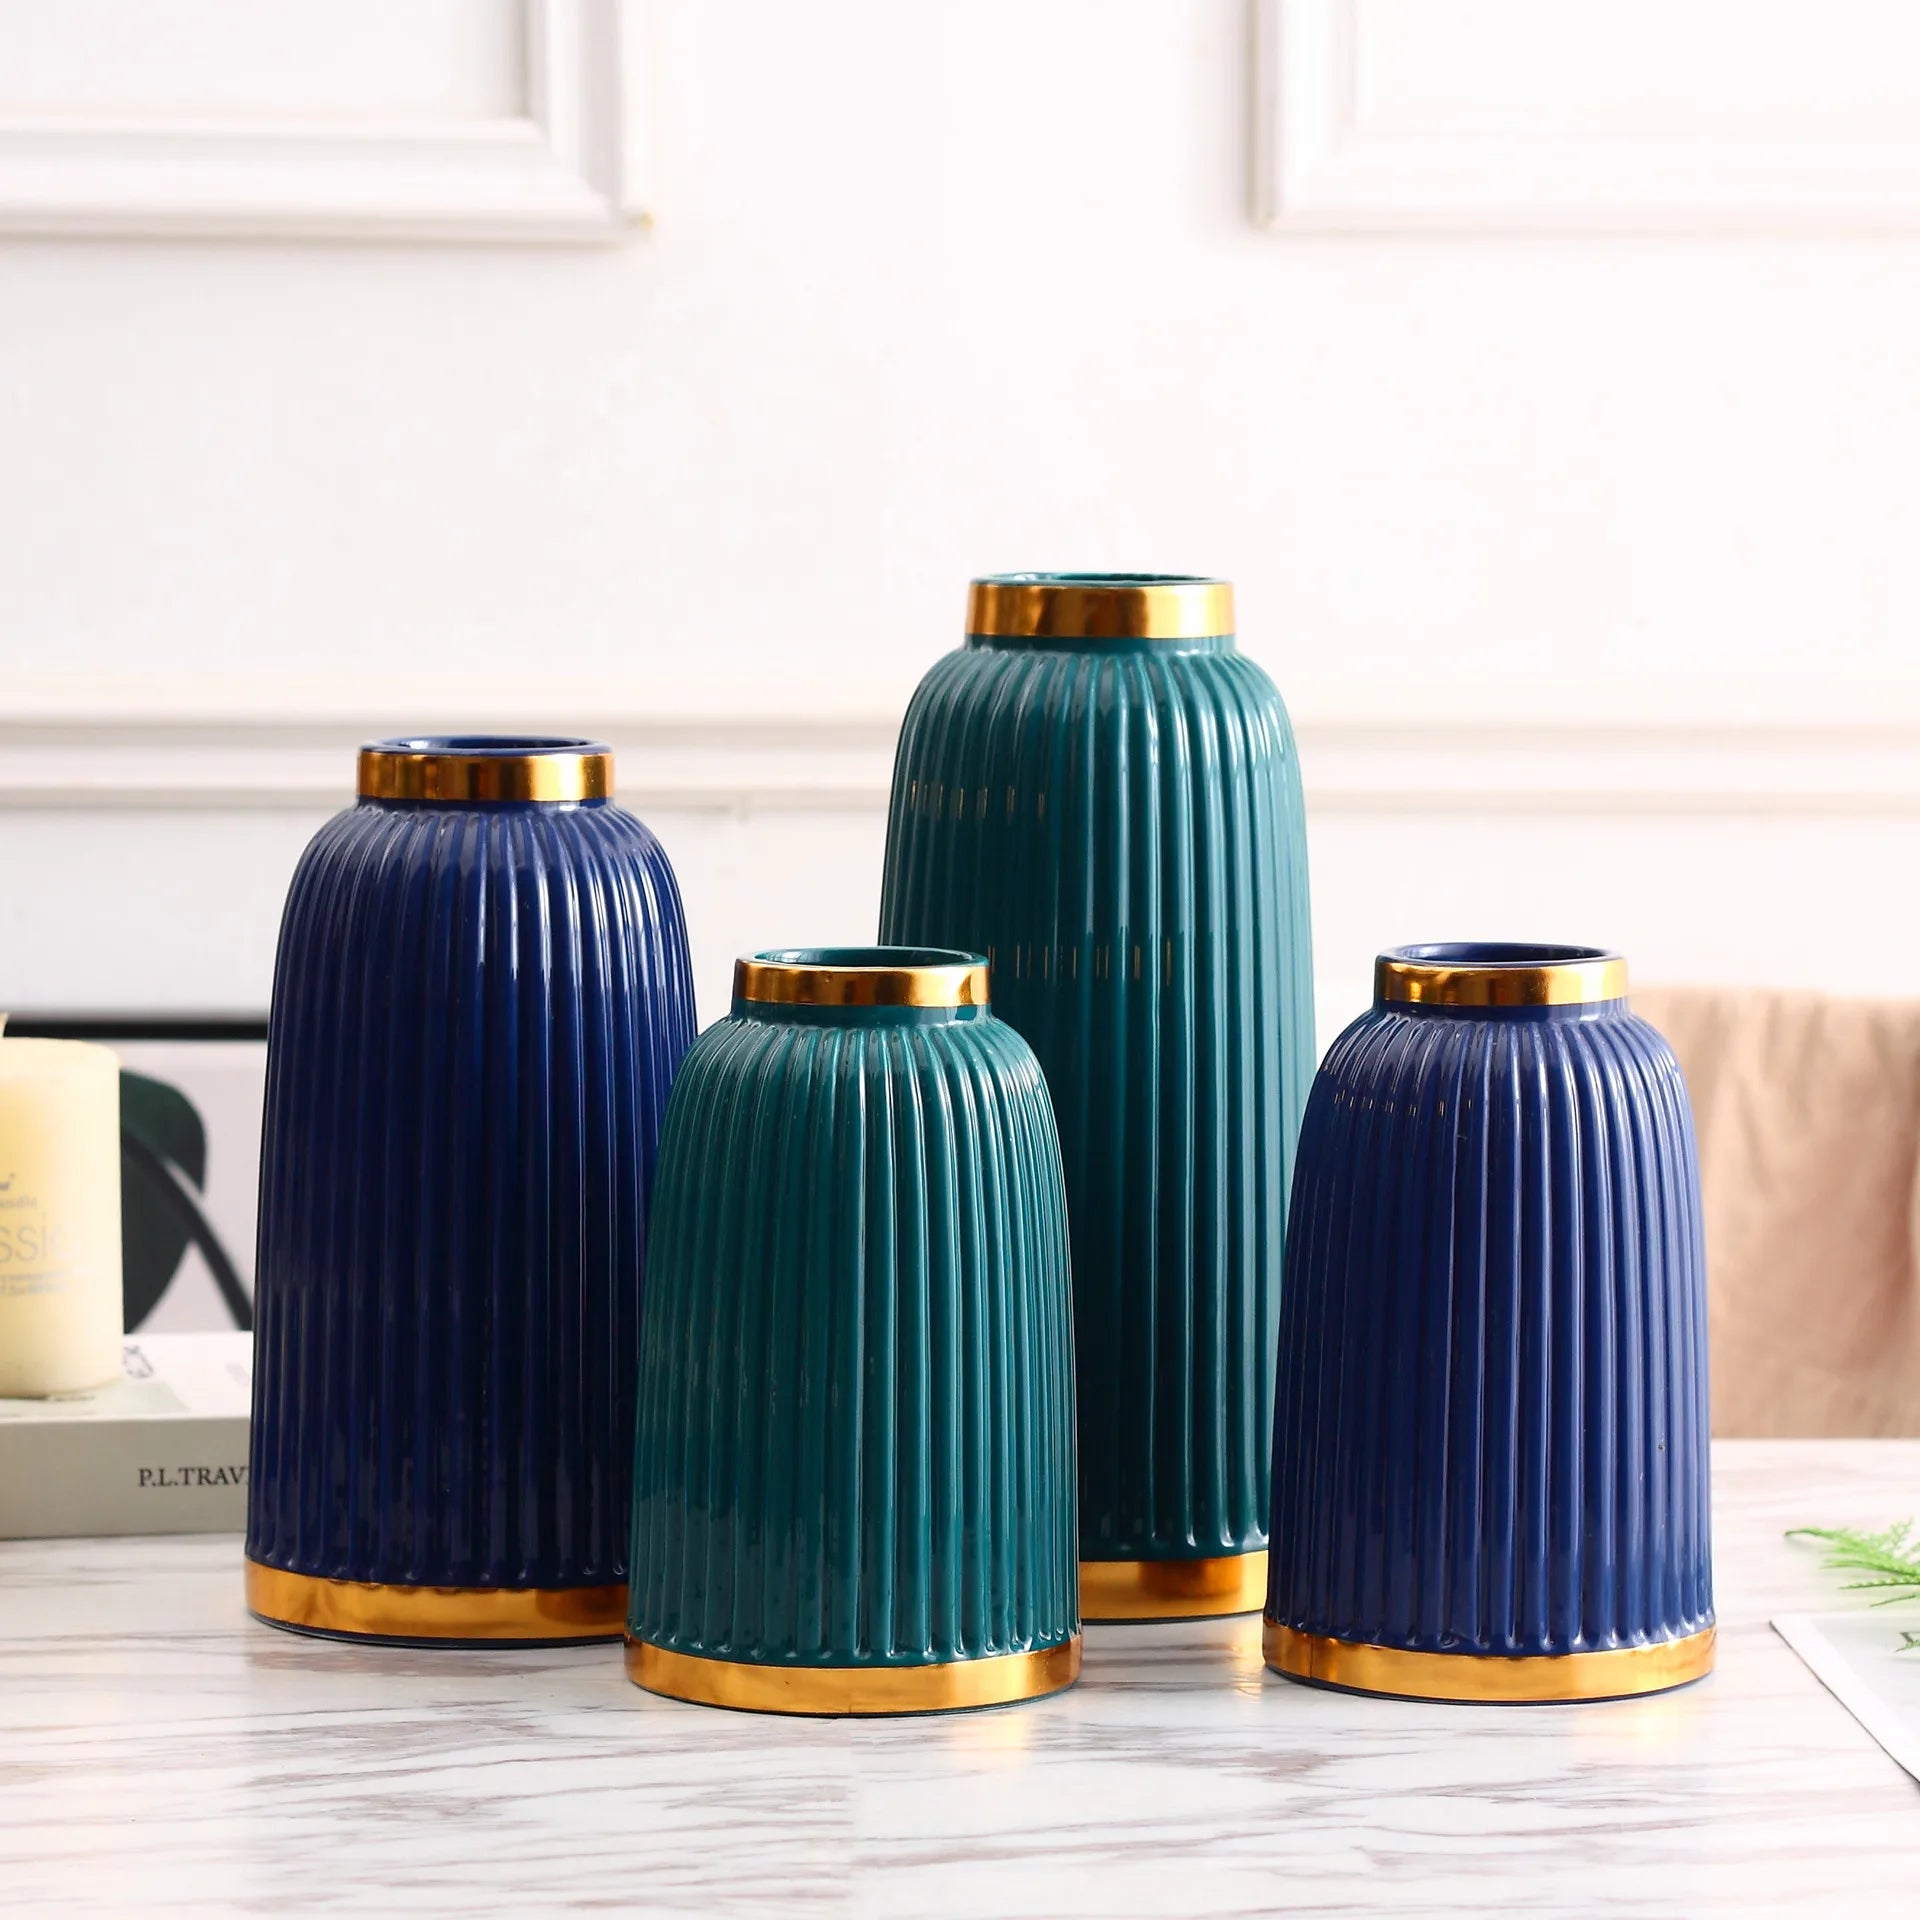 Vases en céramique minimaliste moderne placée en blanc, bleu tibétain et vert - accessoires de décoration intérieure pour le salon